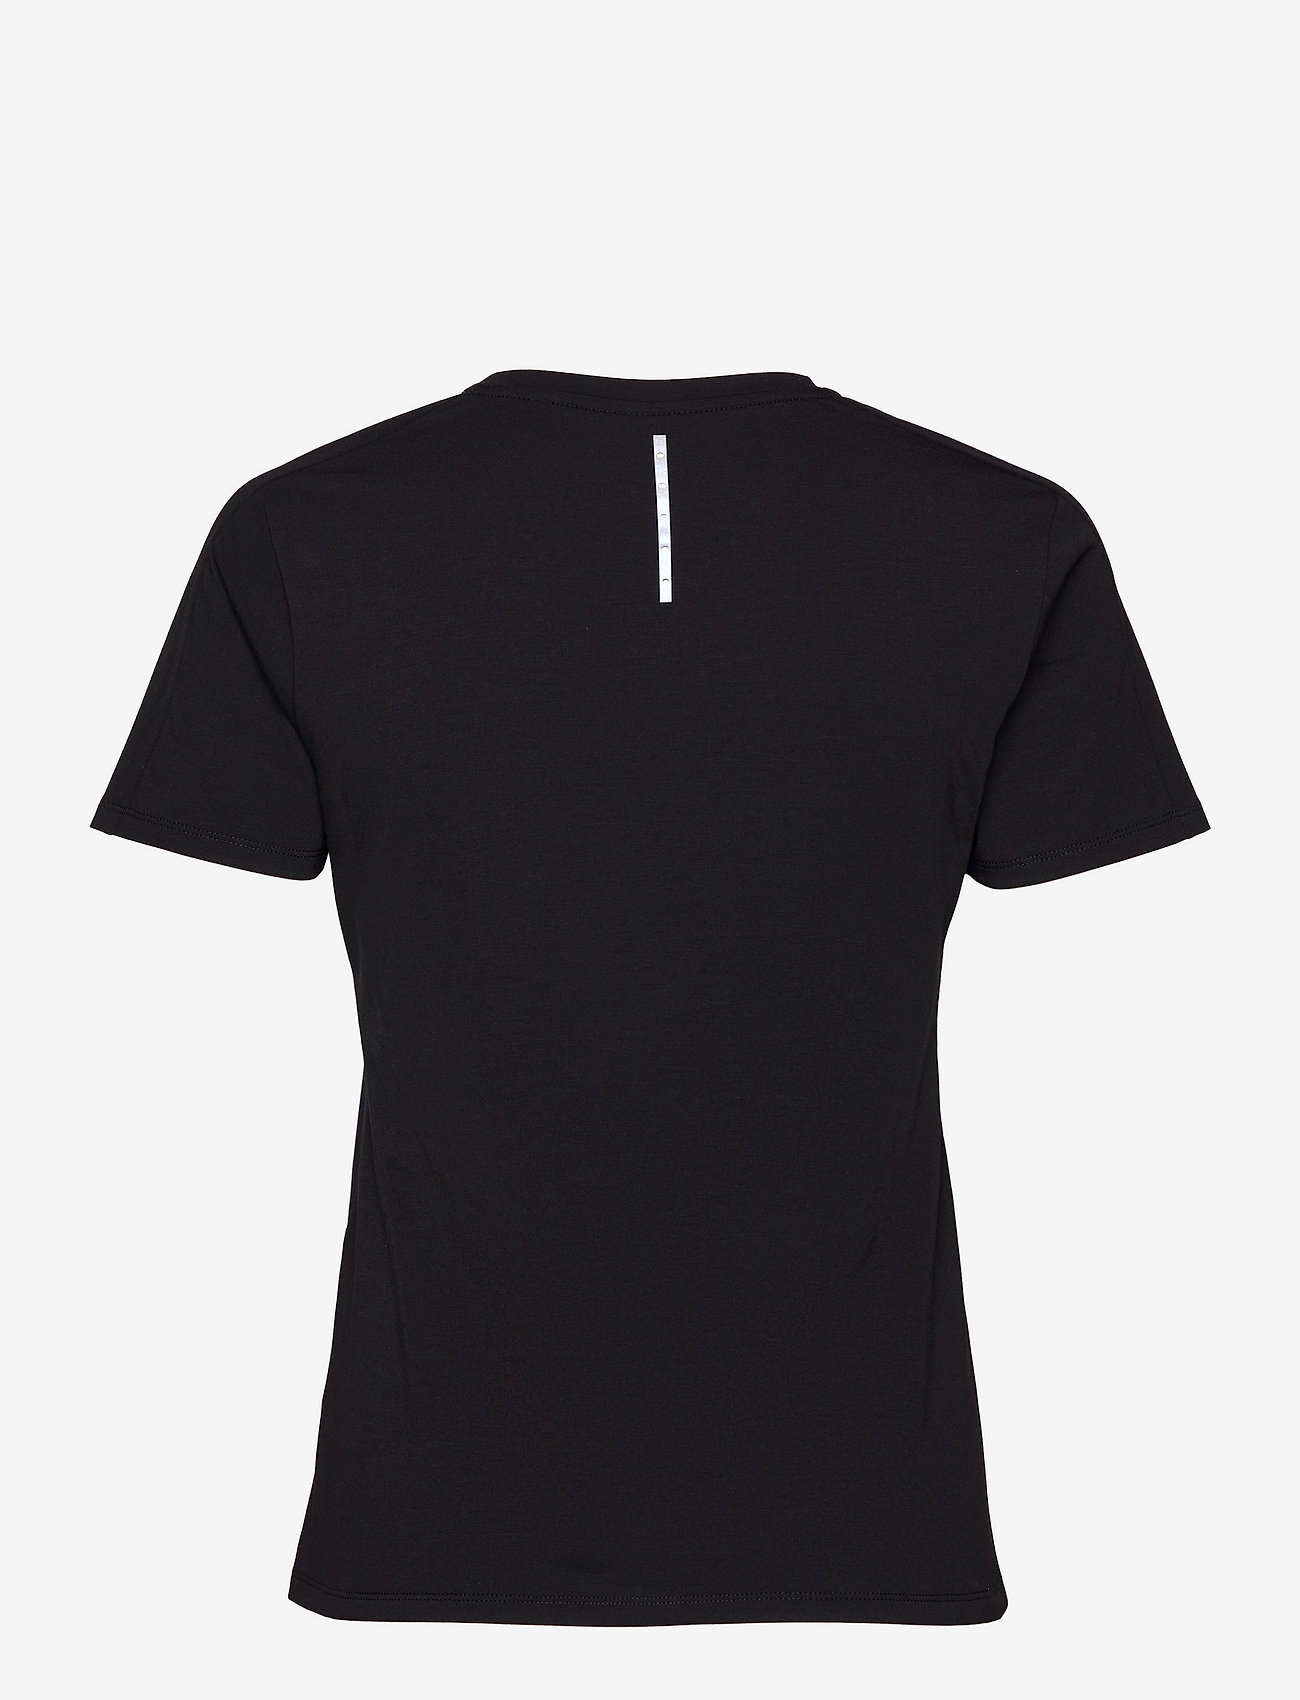 Rockay - Women's 20four7 Tee - t-shirts & tops - midnight black - 1